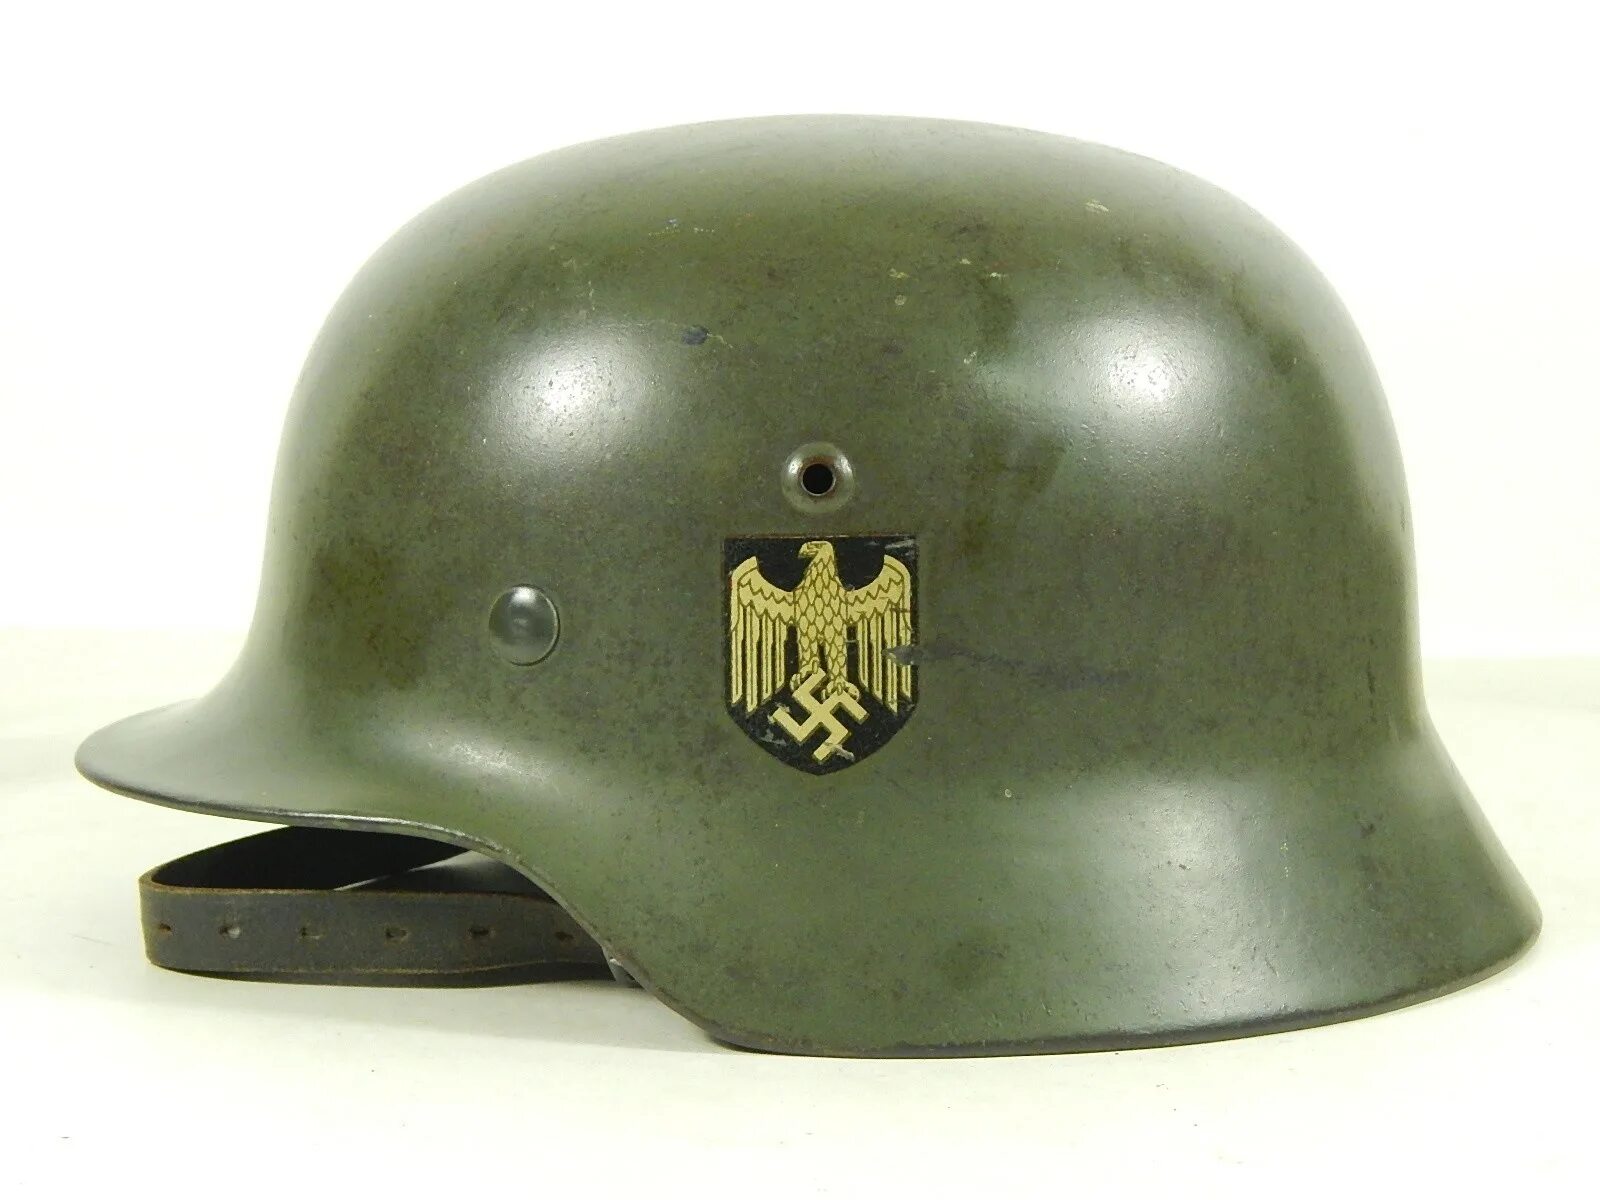 Купить германию 2. M35 шлем. Немецкий шлем m35. Финская каска 1939 сбоку. M35 каска.